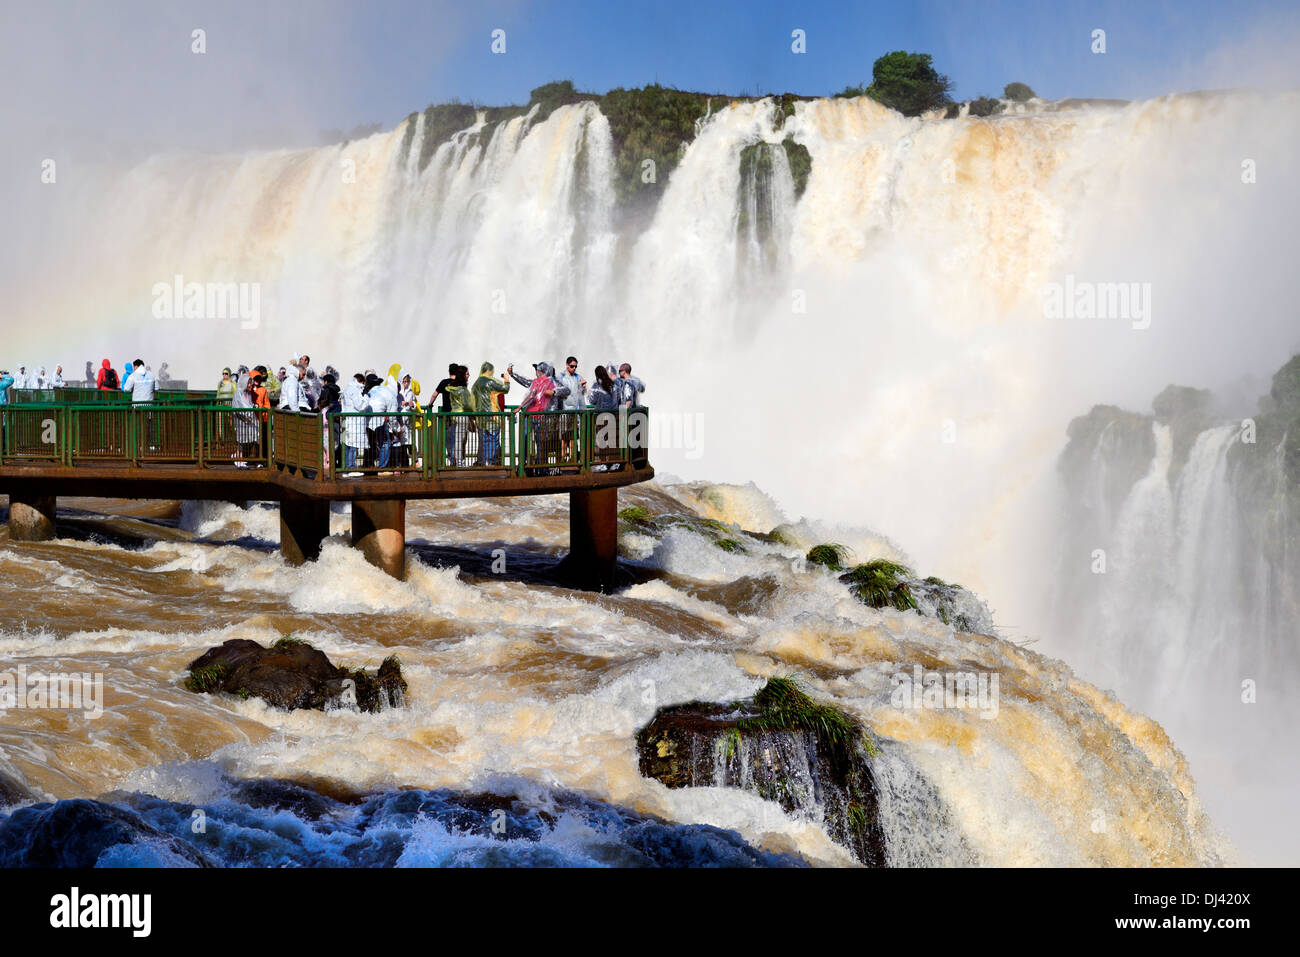 Le Brésil, le Parc National d'Iguaçu : les touristes appréciant les volumes d'eau record de l'Iguassu Falls Banque D'Images